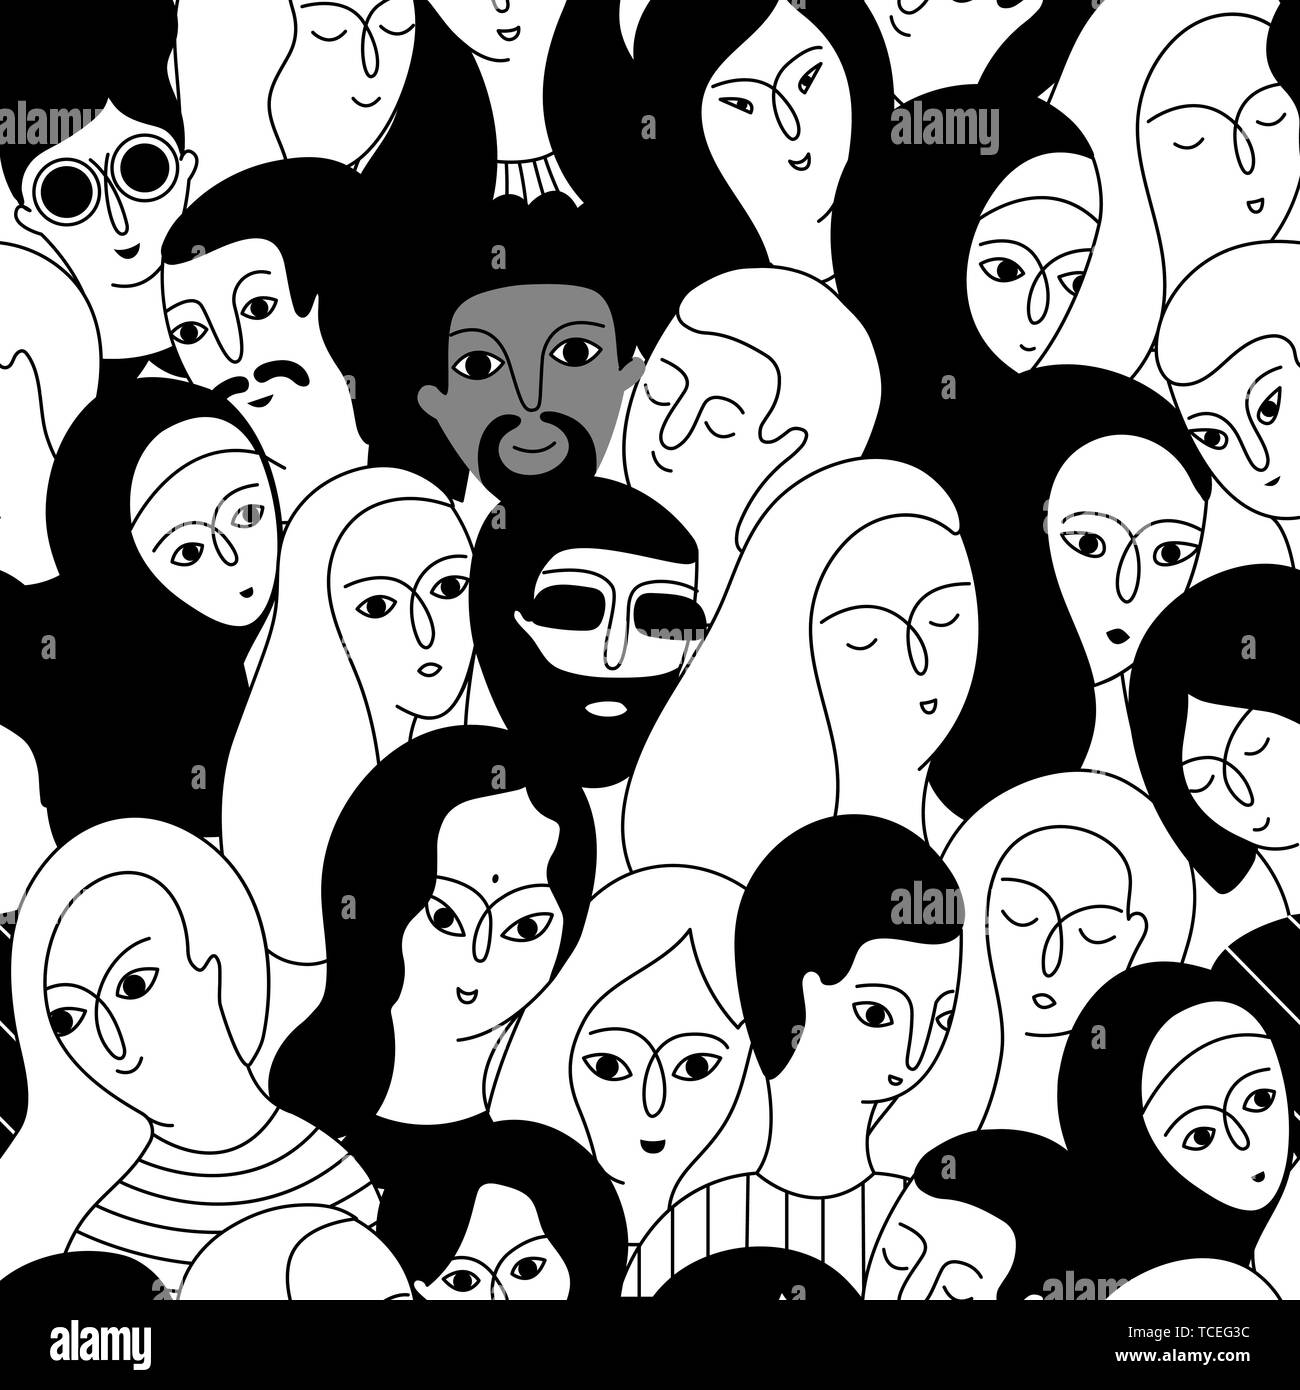 Patrón sin fisuras con un grupo multicultural de hombres y mujeres (musulmanes, asiáticos, europeos, hindúes) sobre un fondo blanco. La diversidad social. Doodle cartoon Ilustración del Vector